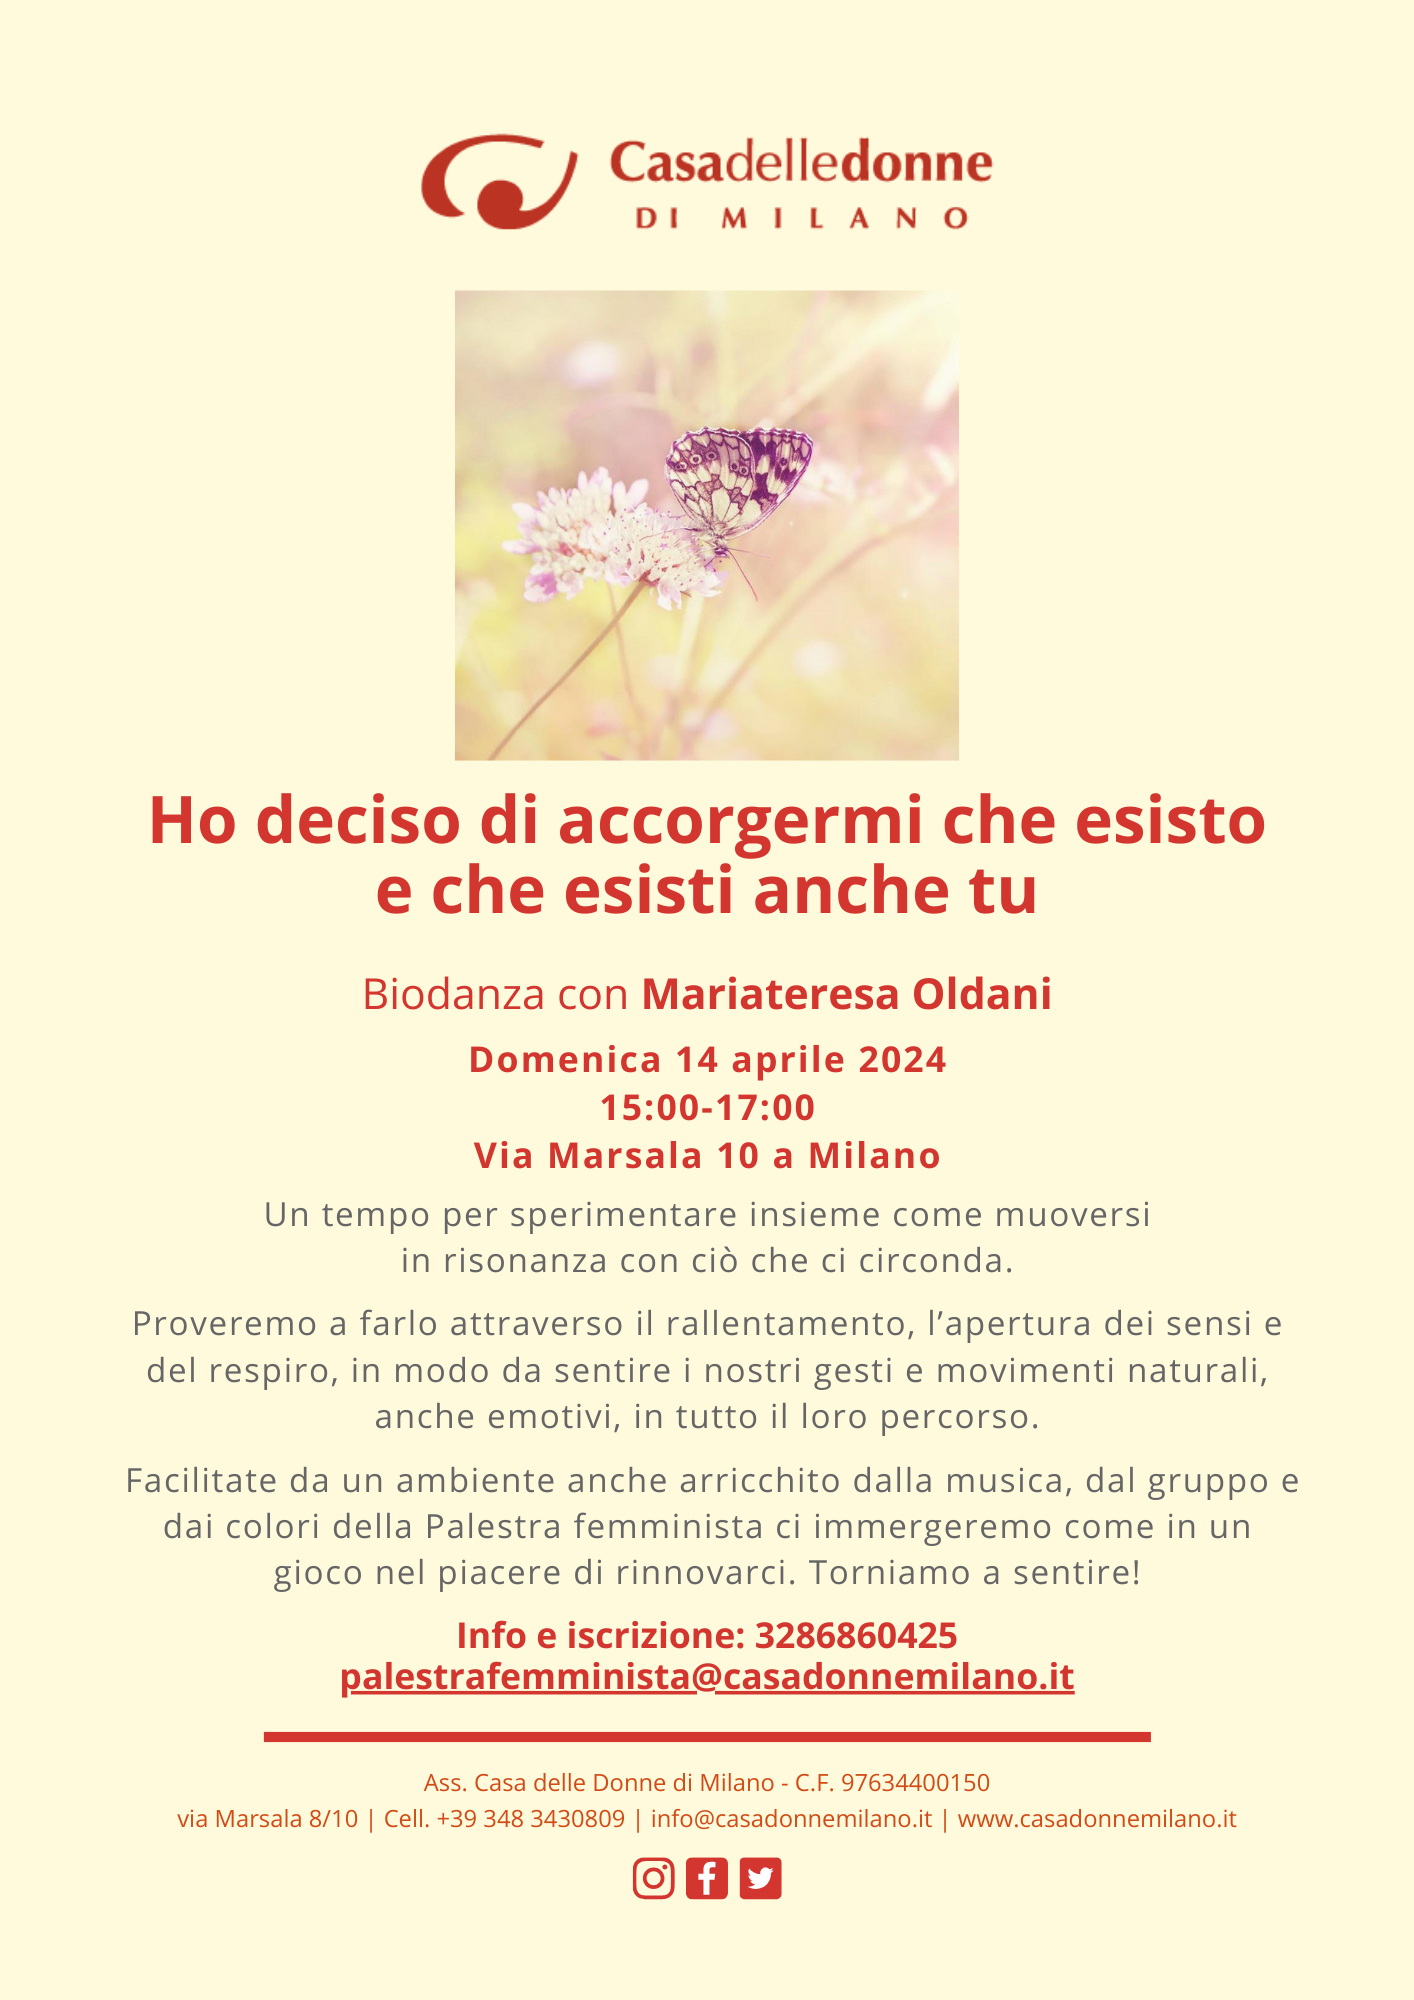 Biodanza con Maria Teresa Oldani "Ho deciso di accorgermi che esisto e che esisti anche tu" @ Casa delle Donne di Milano